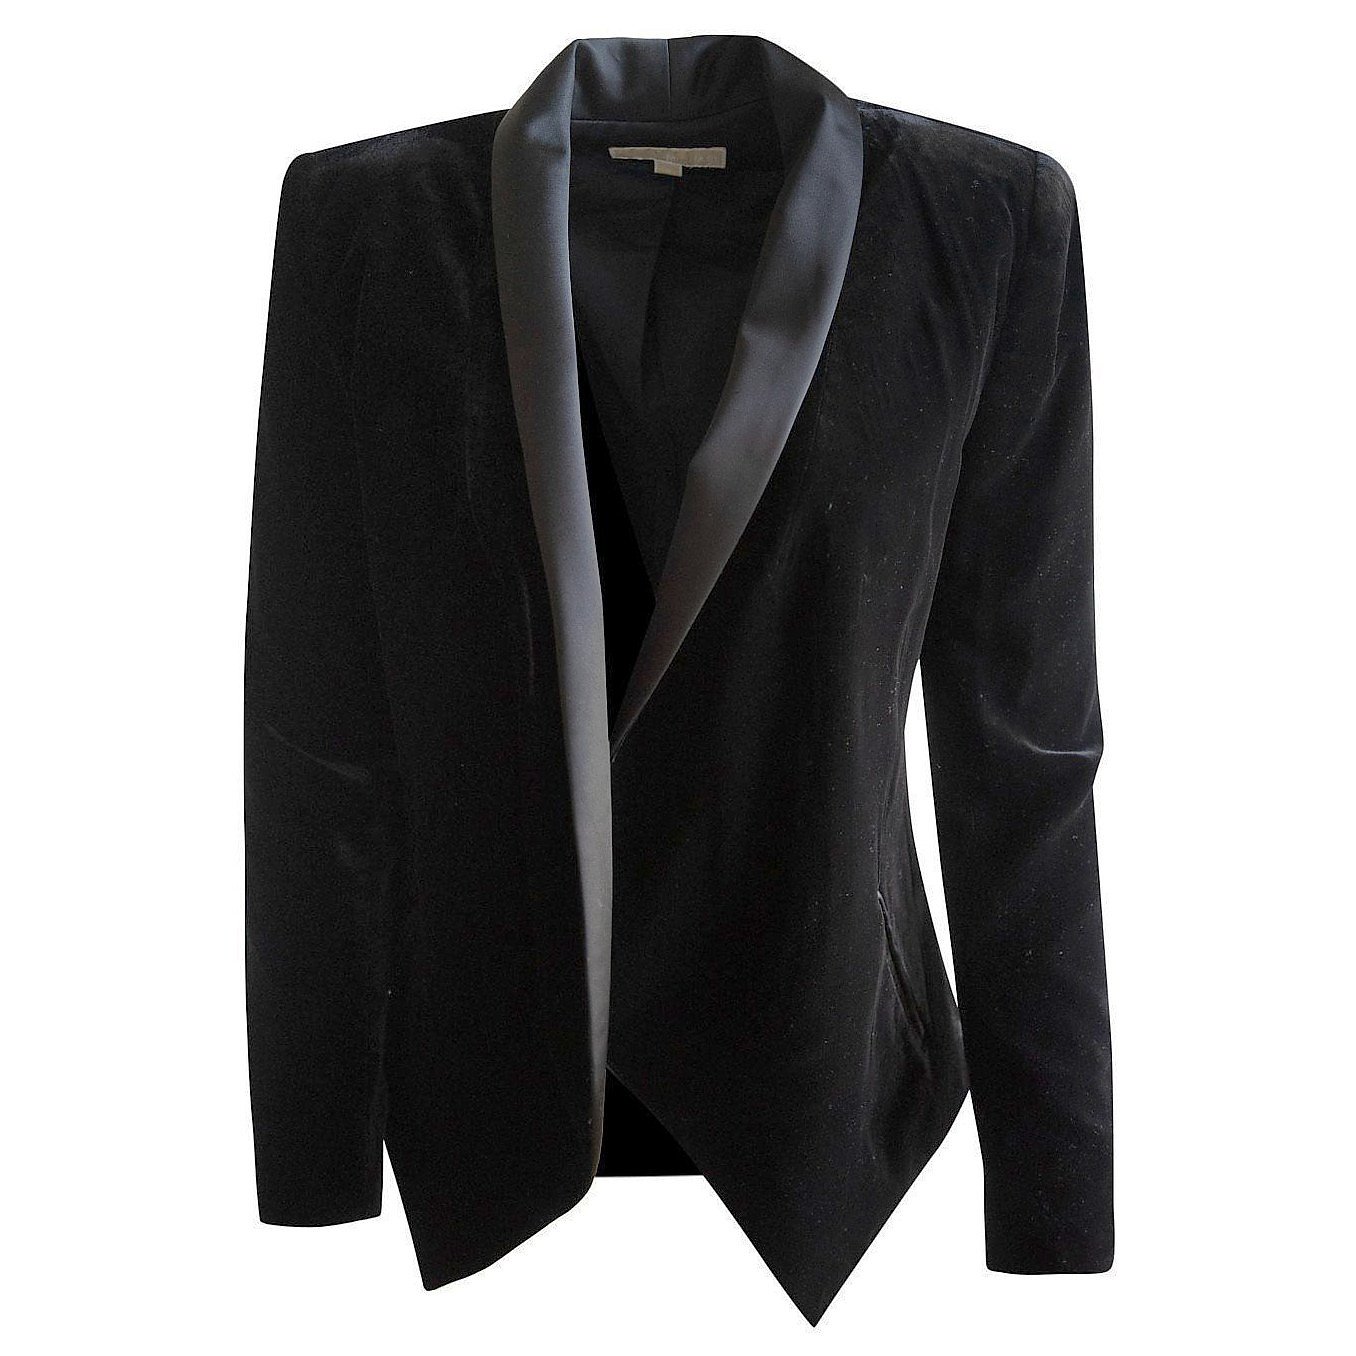 Michael Kors Velvet Tuxedo Jacket